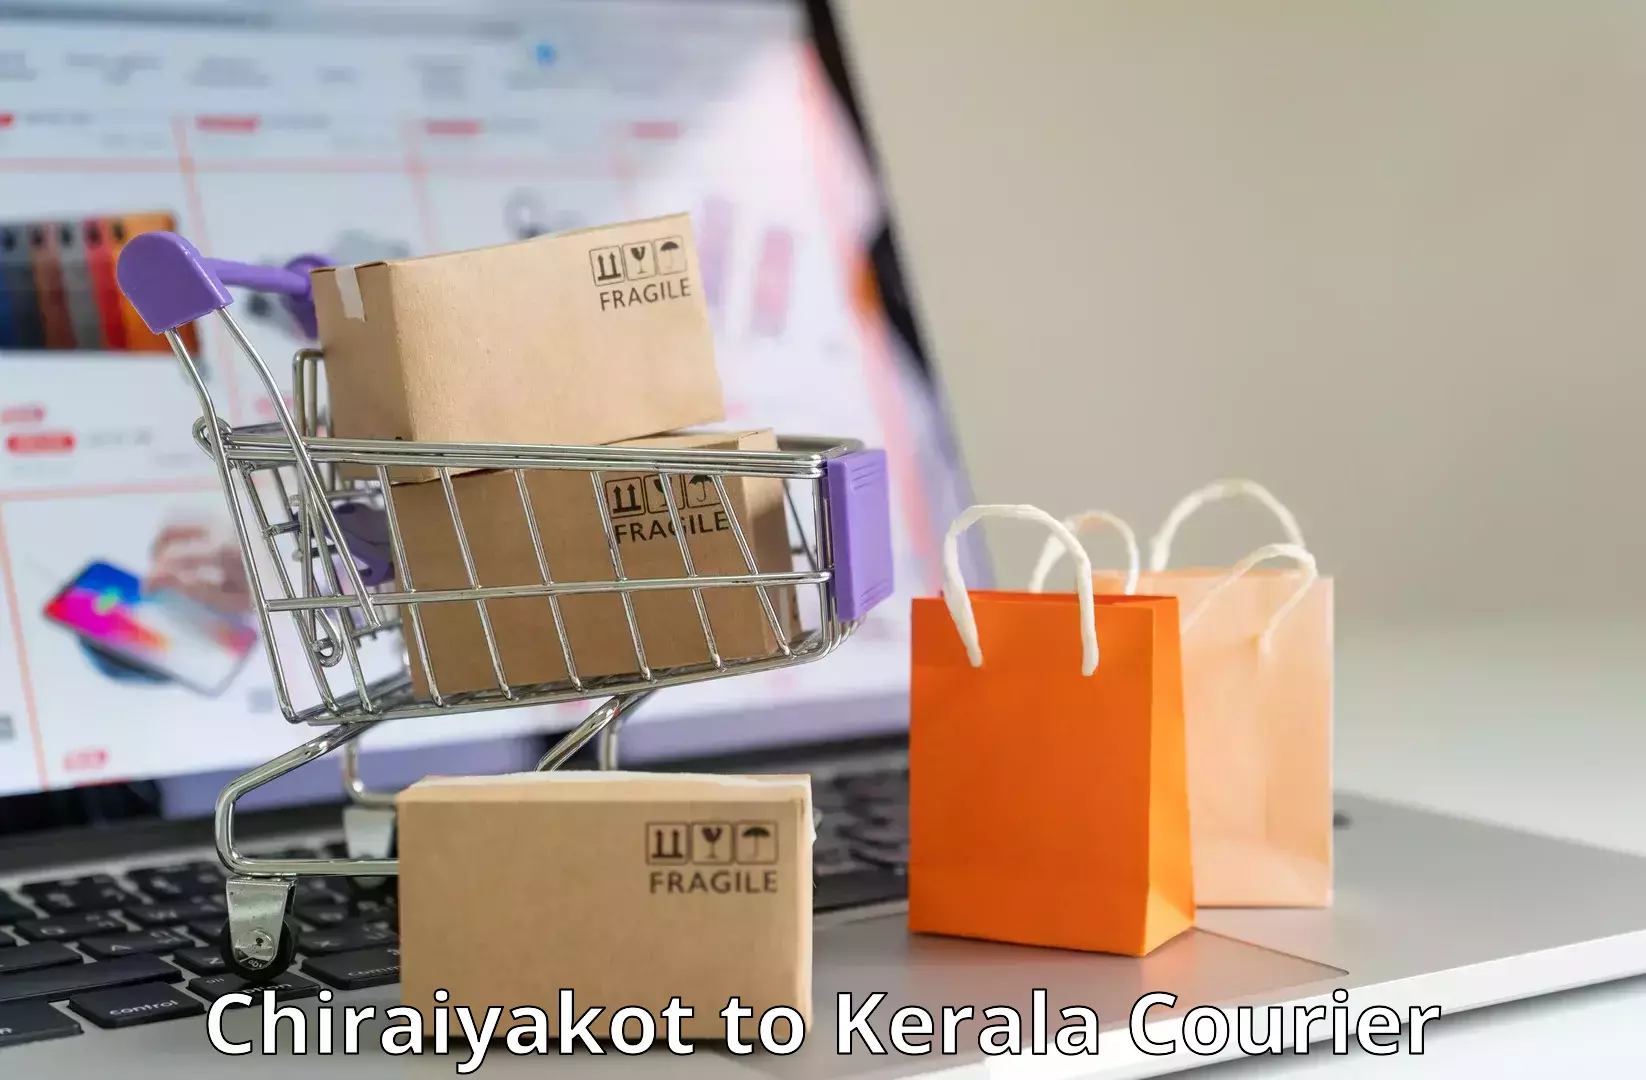 Advanced package delivery Chiraiyakot to Kalanjoor